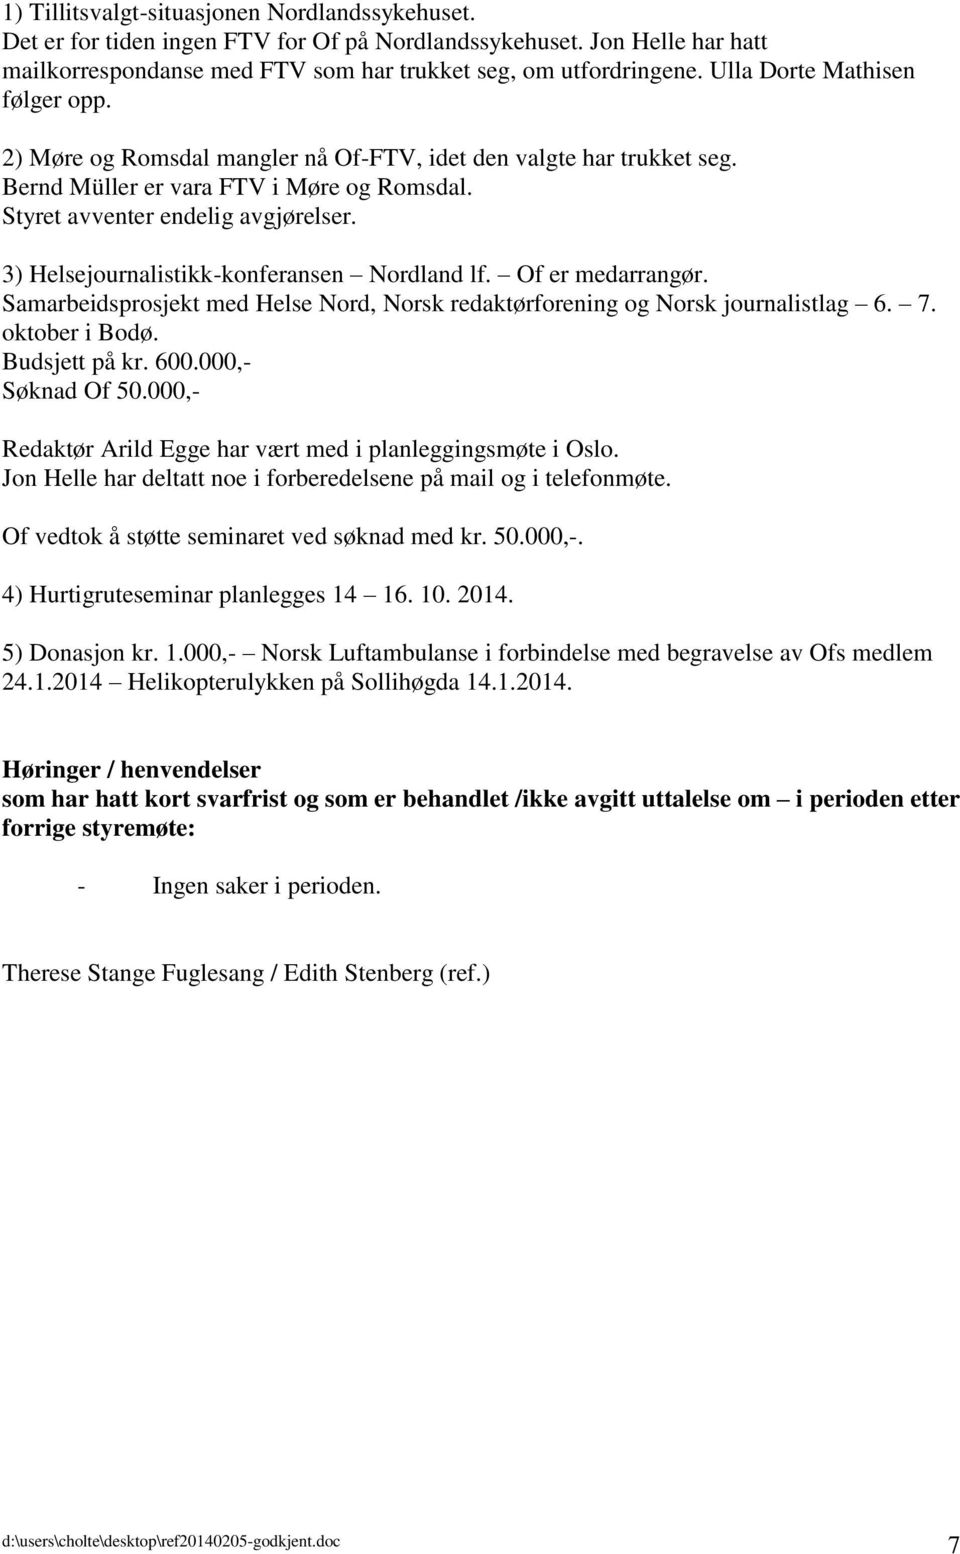 3) Helsejournalistikk-konferansen Nordland lf. Of er medarrangør. Samarbeidsprosjekt med Helse Nord, Norsk redaktørforening og Norsk journalistlag 6. 7. oktober i Bodø. Budsjett på kr. 600.